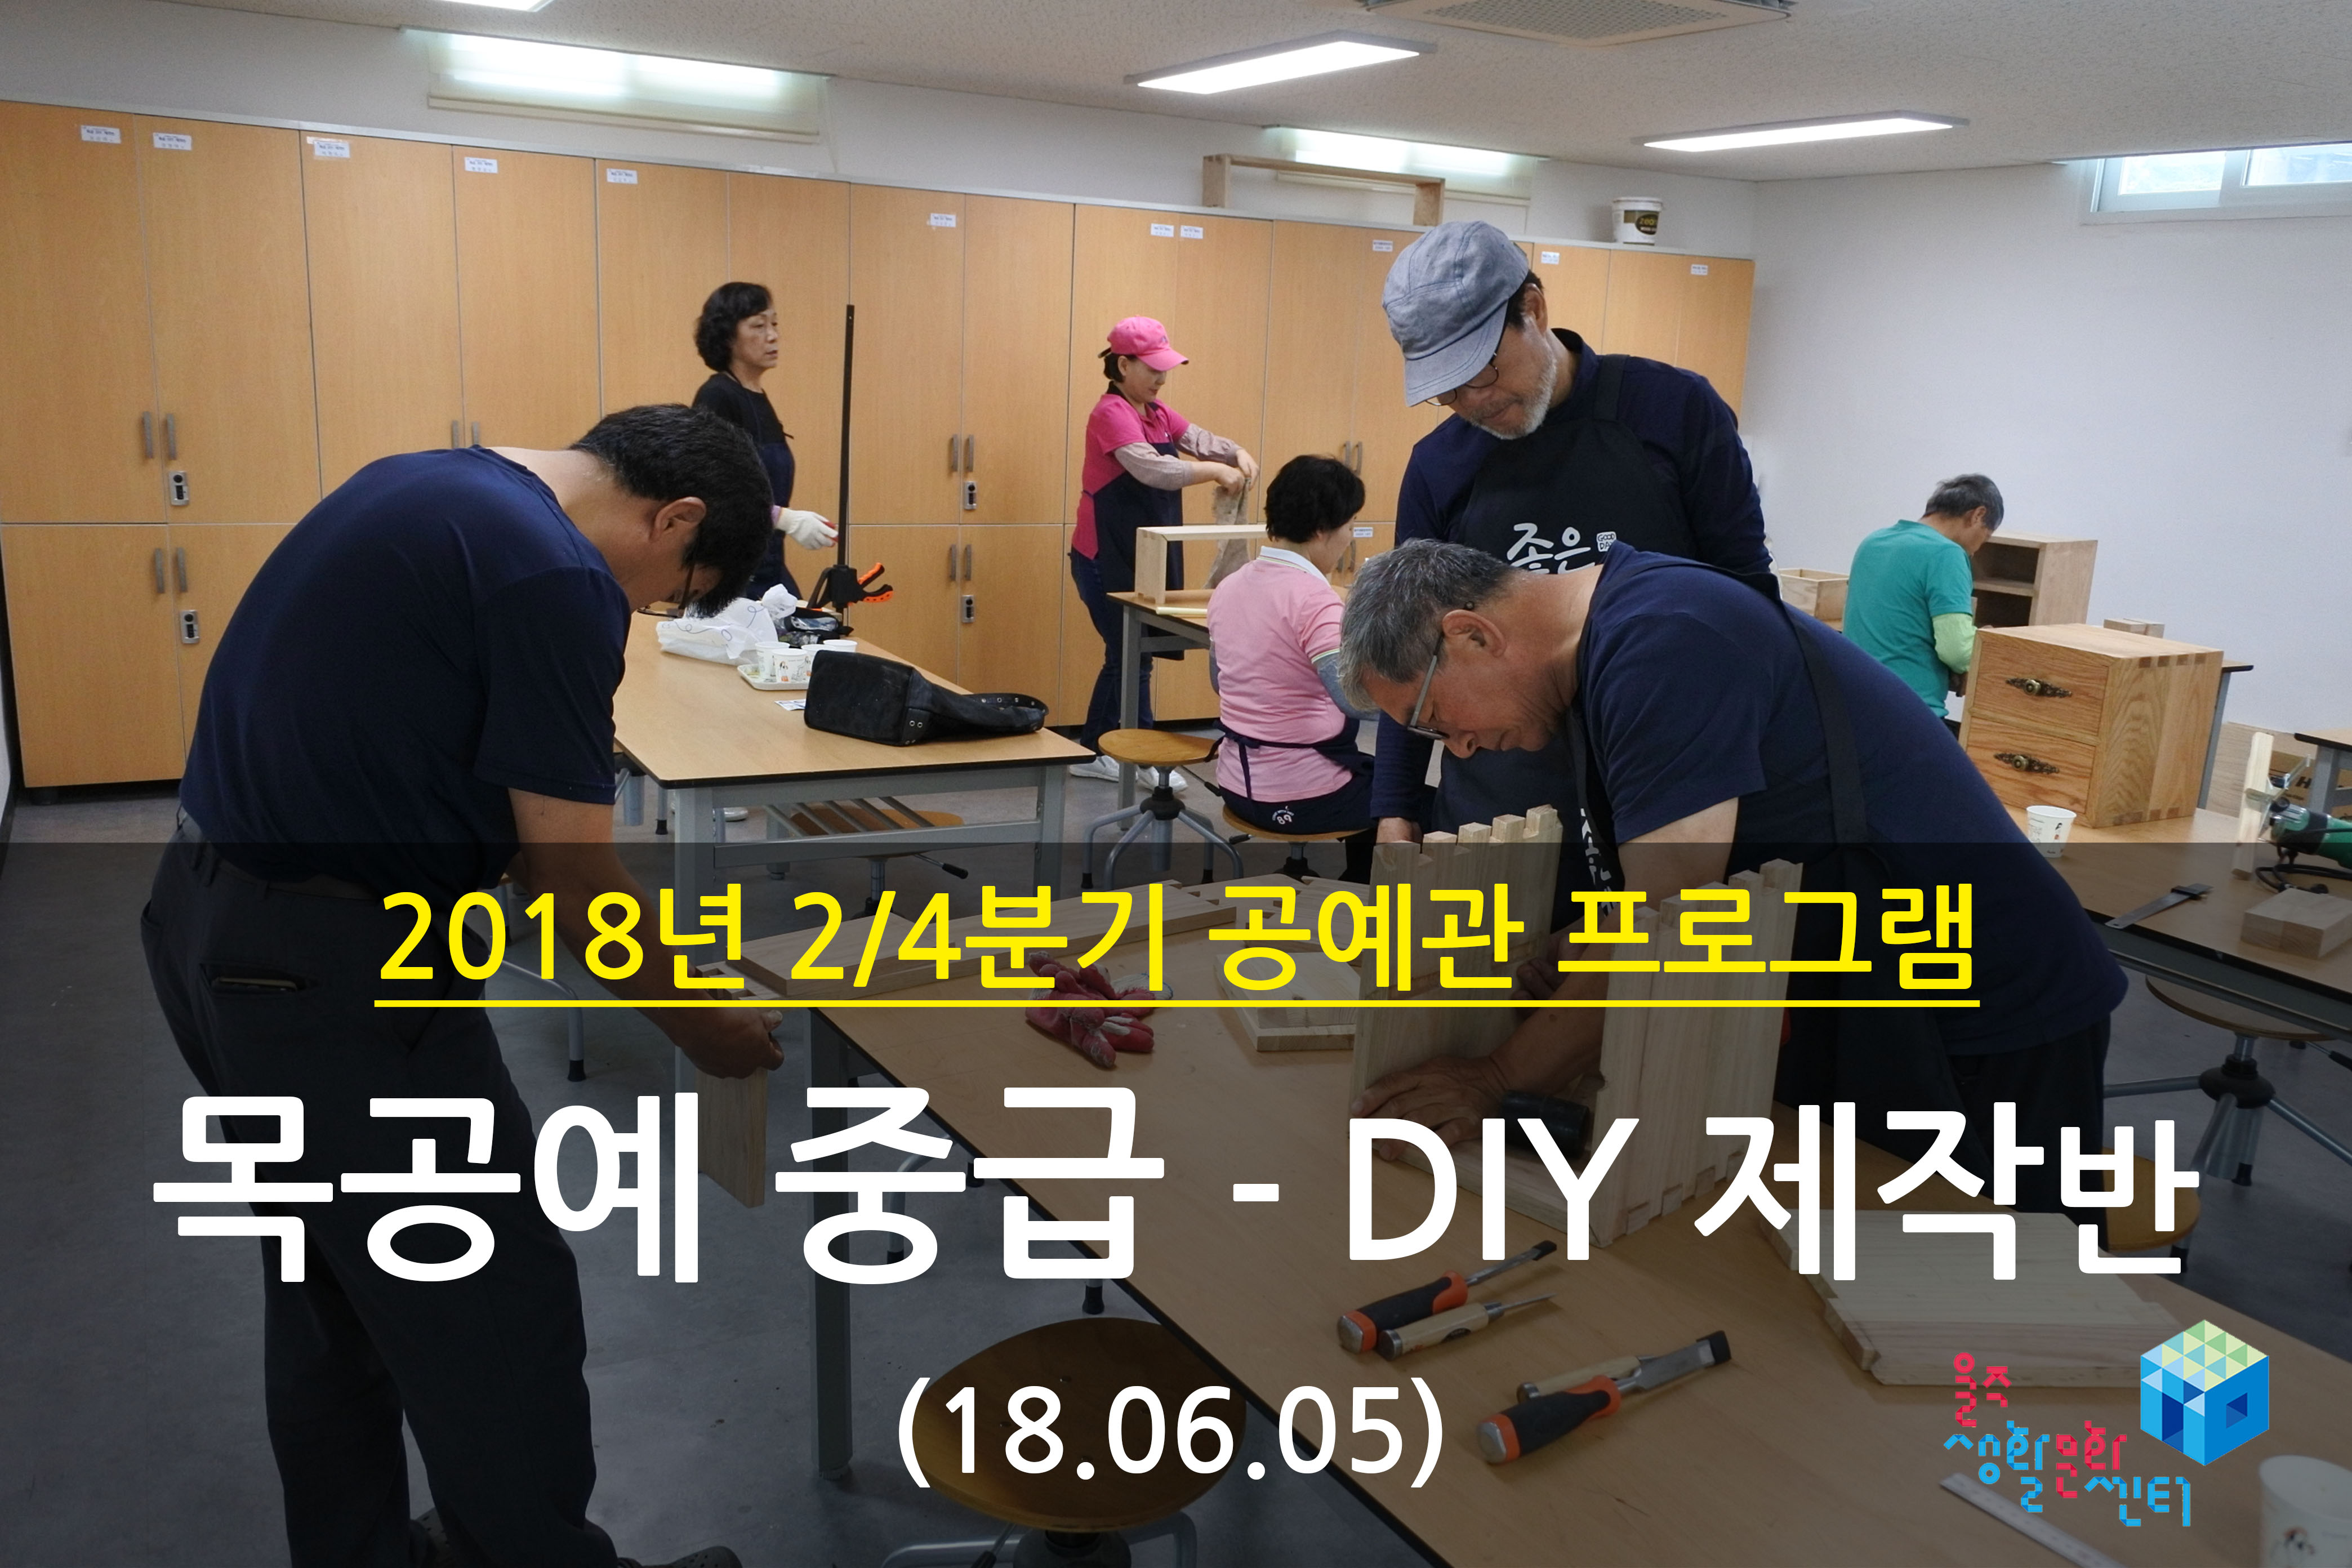 2018.06.05 _ 목공예 중급 - DIY 제작반 _ 2/4분기 9주차 수업